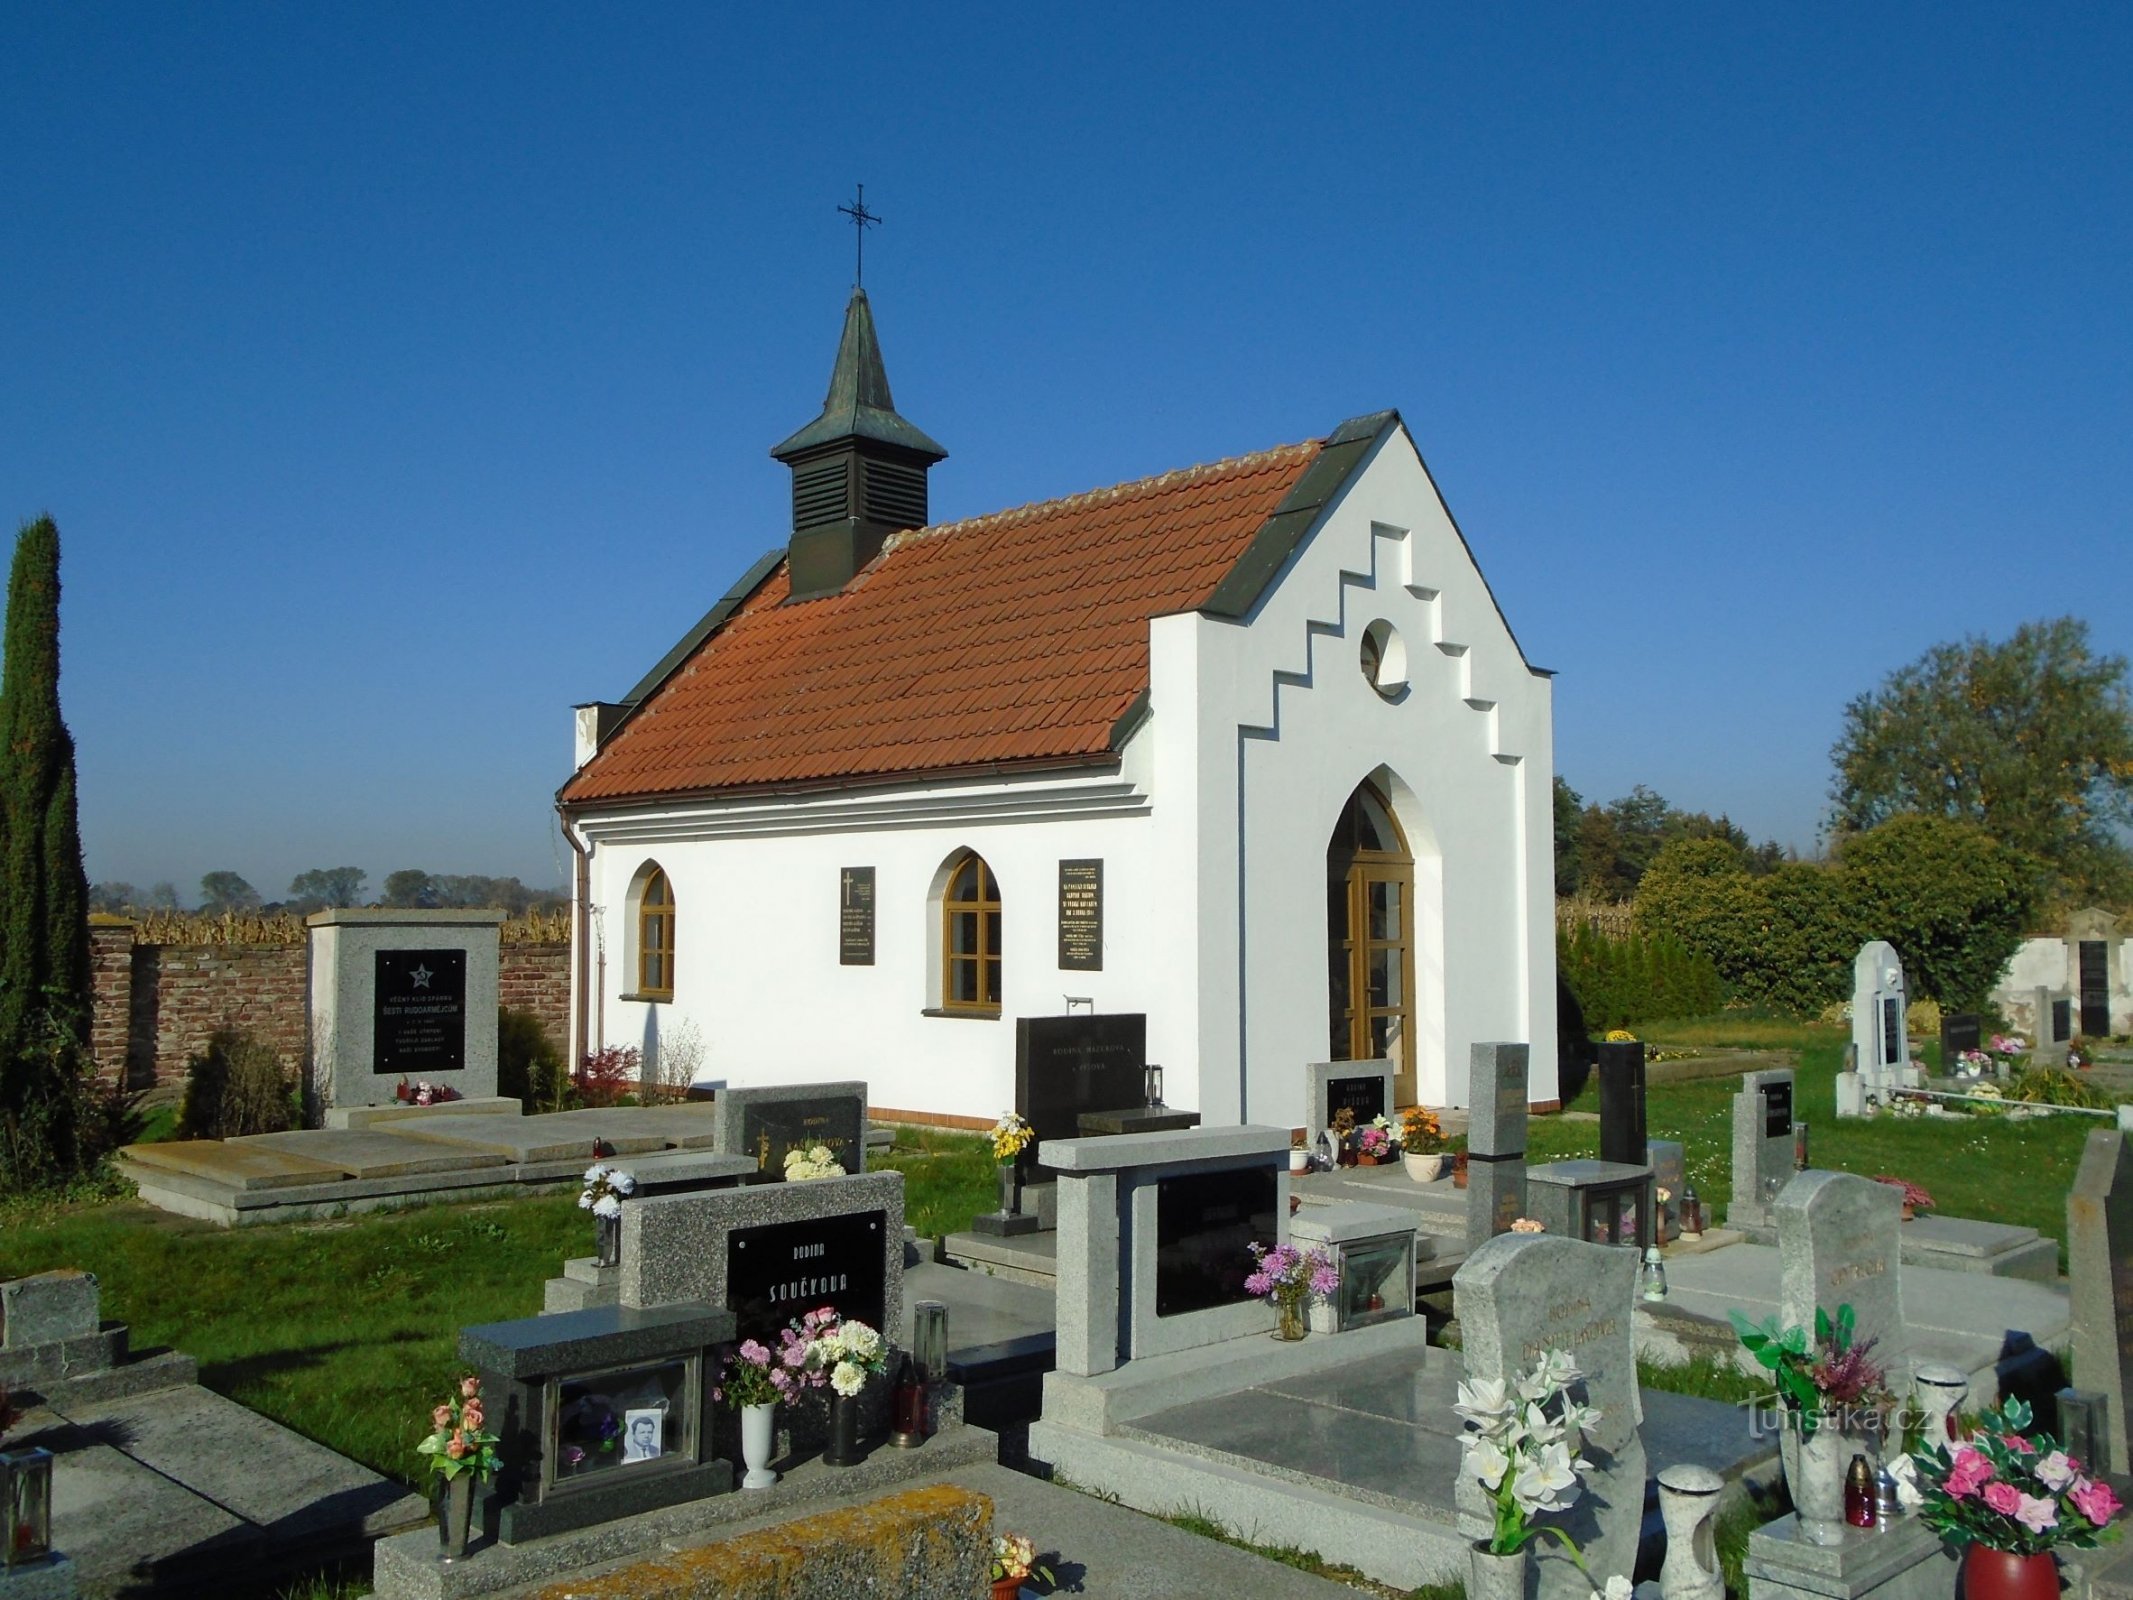 Nhà nguyện nghĩa trang (Vysoká nad Labem, 16.10.2017/XNUMX/XNUMX)